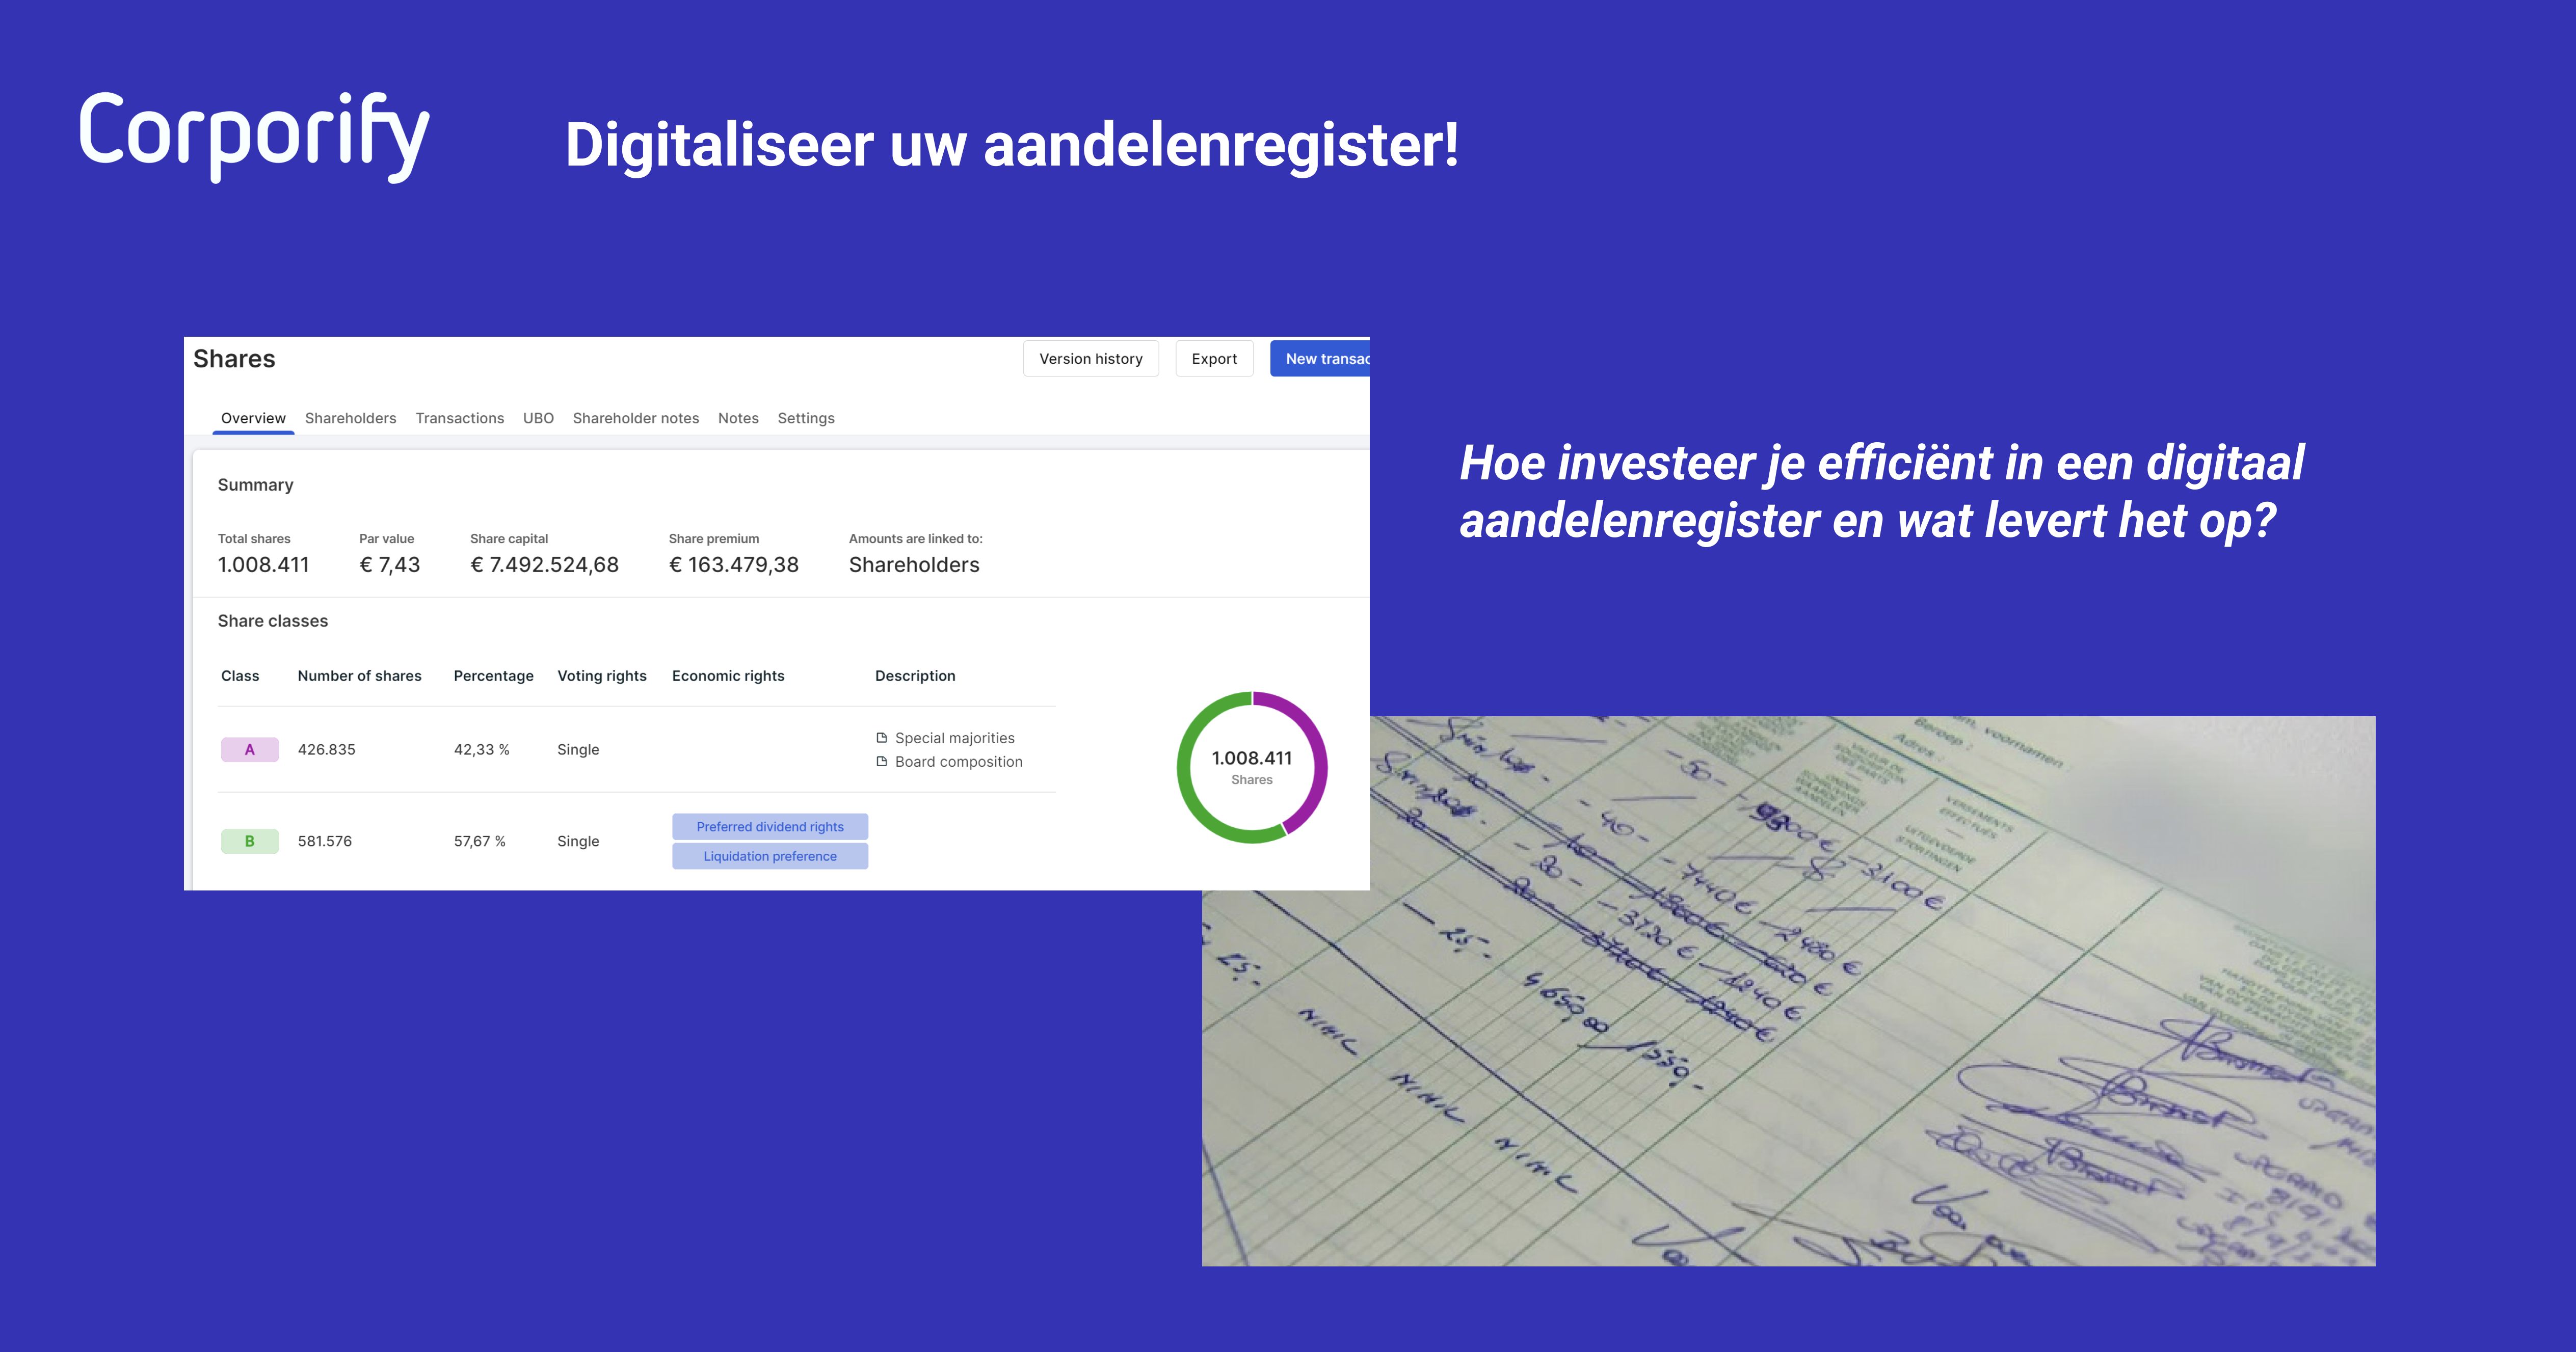 Digitaliseer uw aandelenregister! (NL)